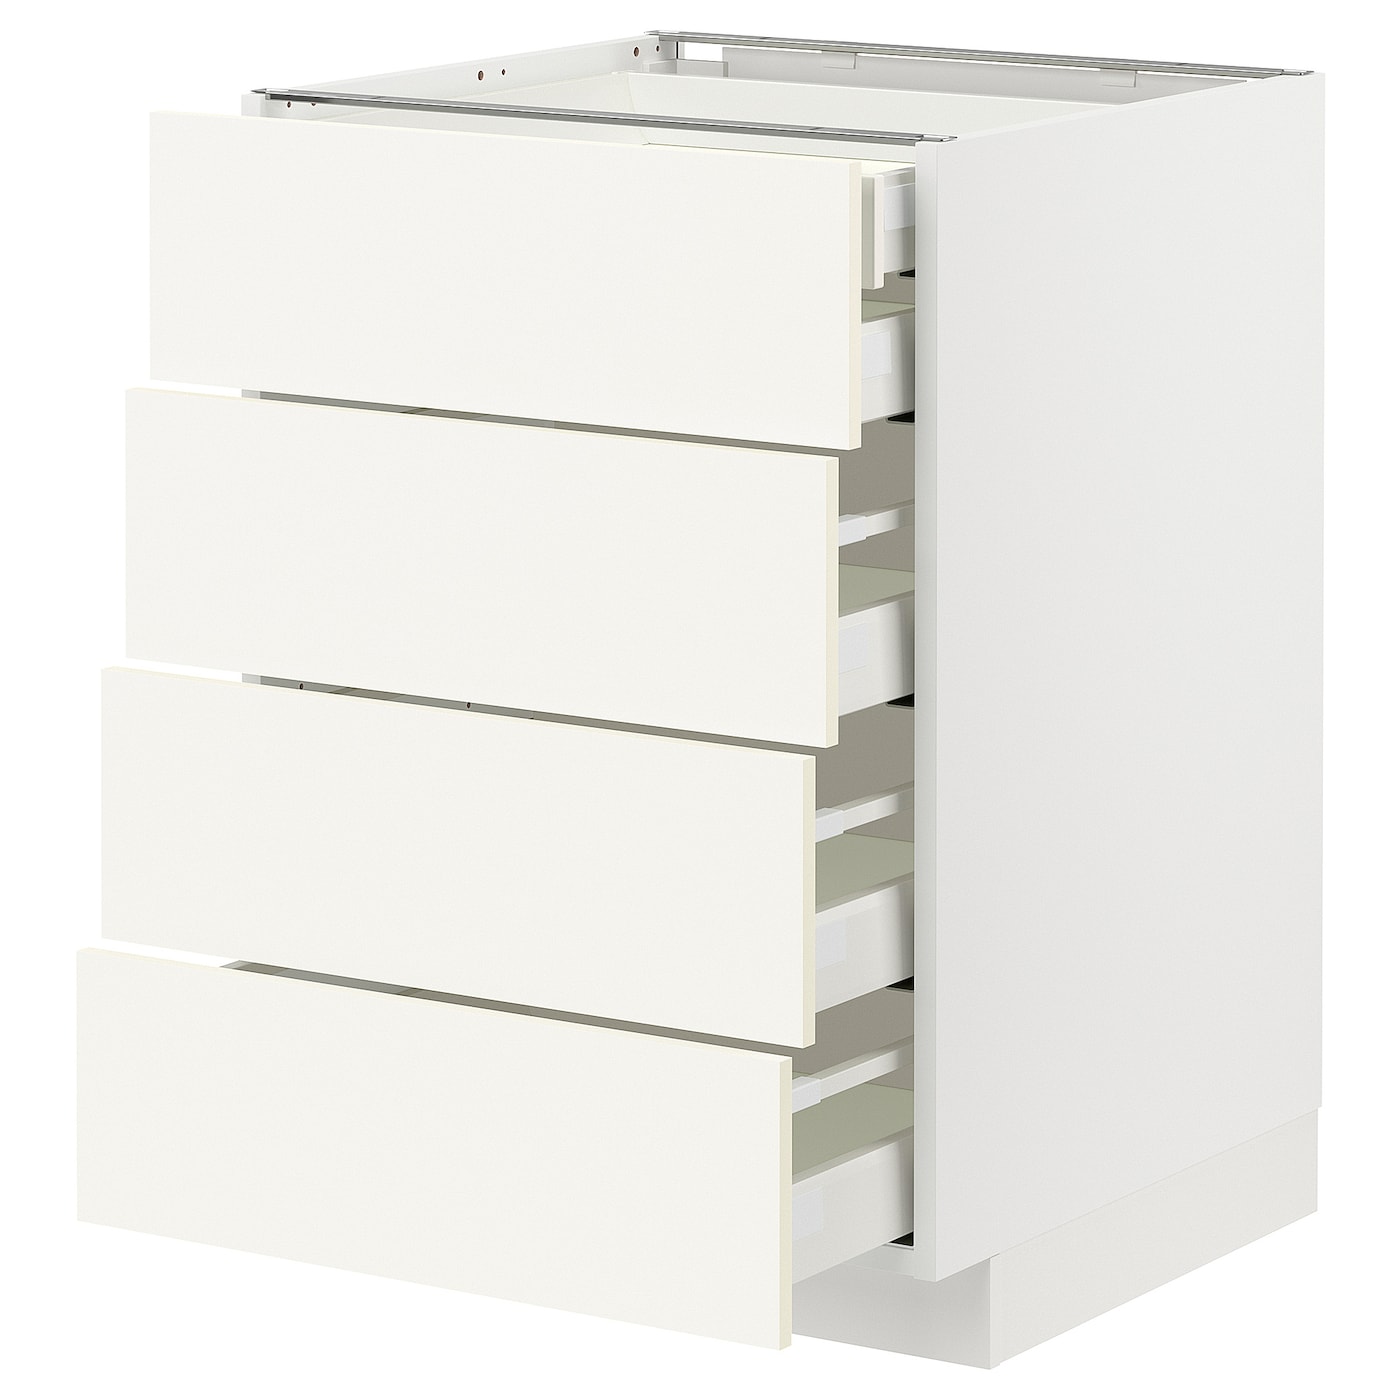 Напольный шкаф  - IKEA METOD MAXIMERA, 88x61,6x60см, белый, МЕТОД МАКСИМЕРА ИКЕА